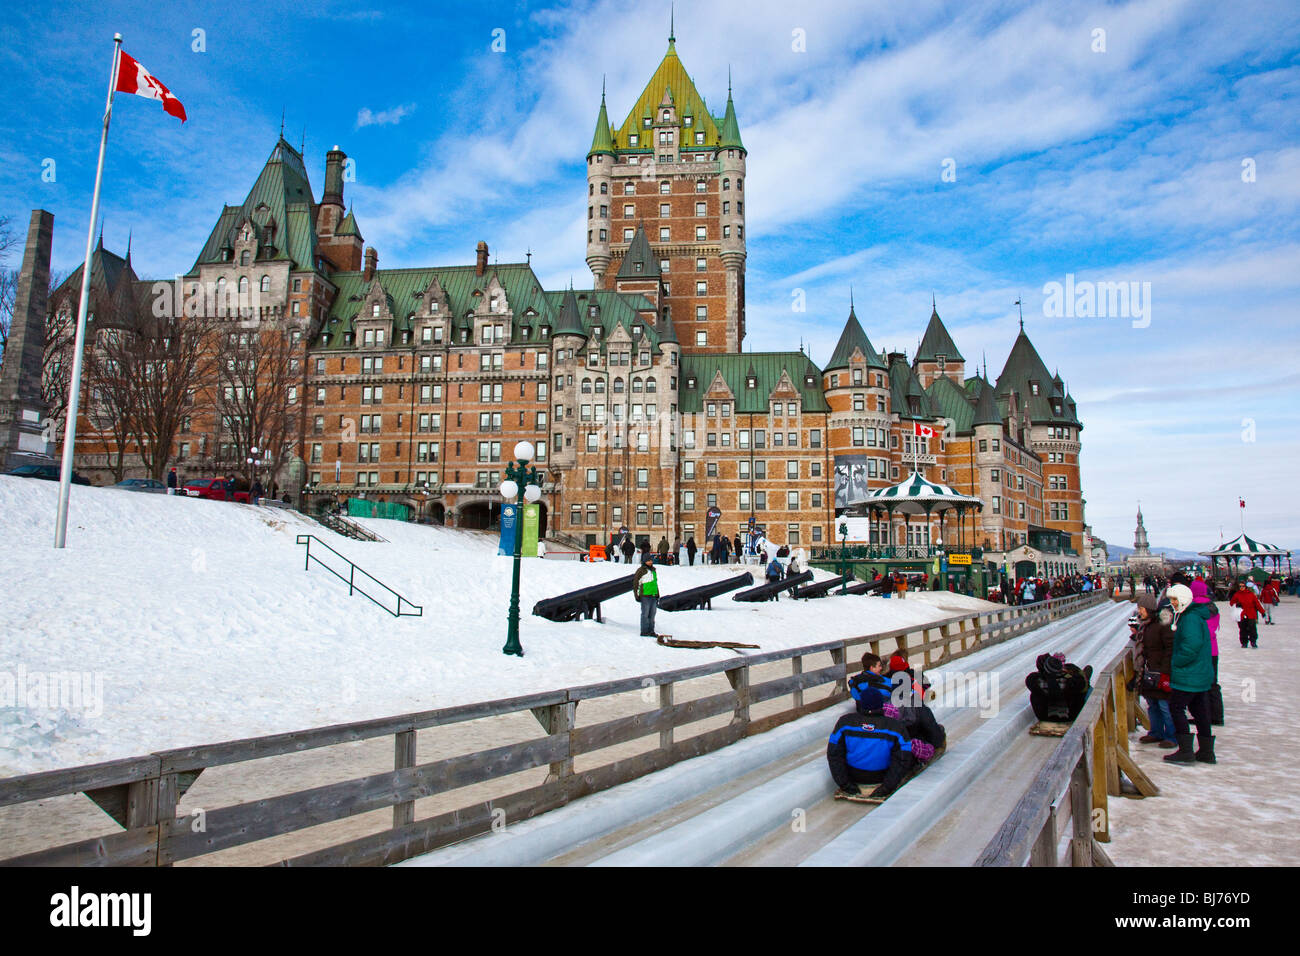 La luge en hiver Carnaval dans la vieille ville de Québec, Canada Banque D'Images